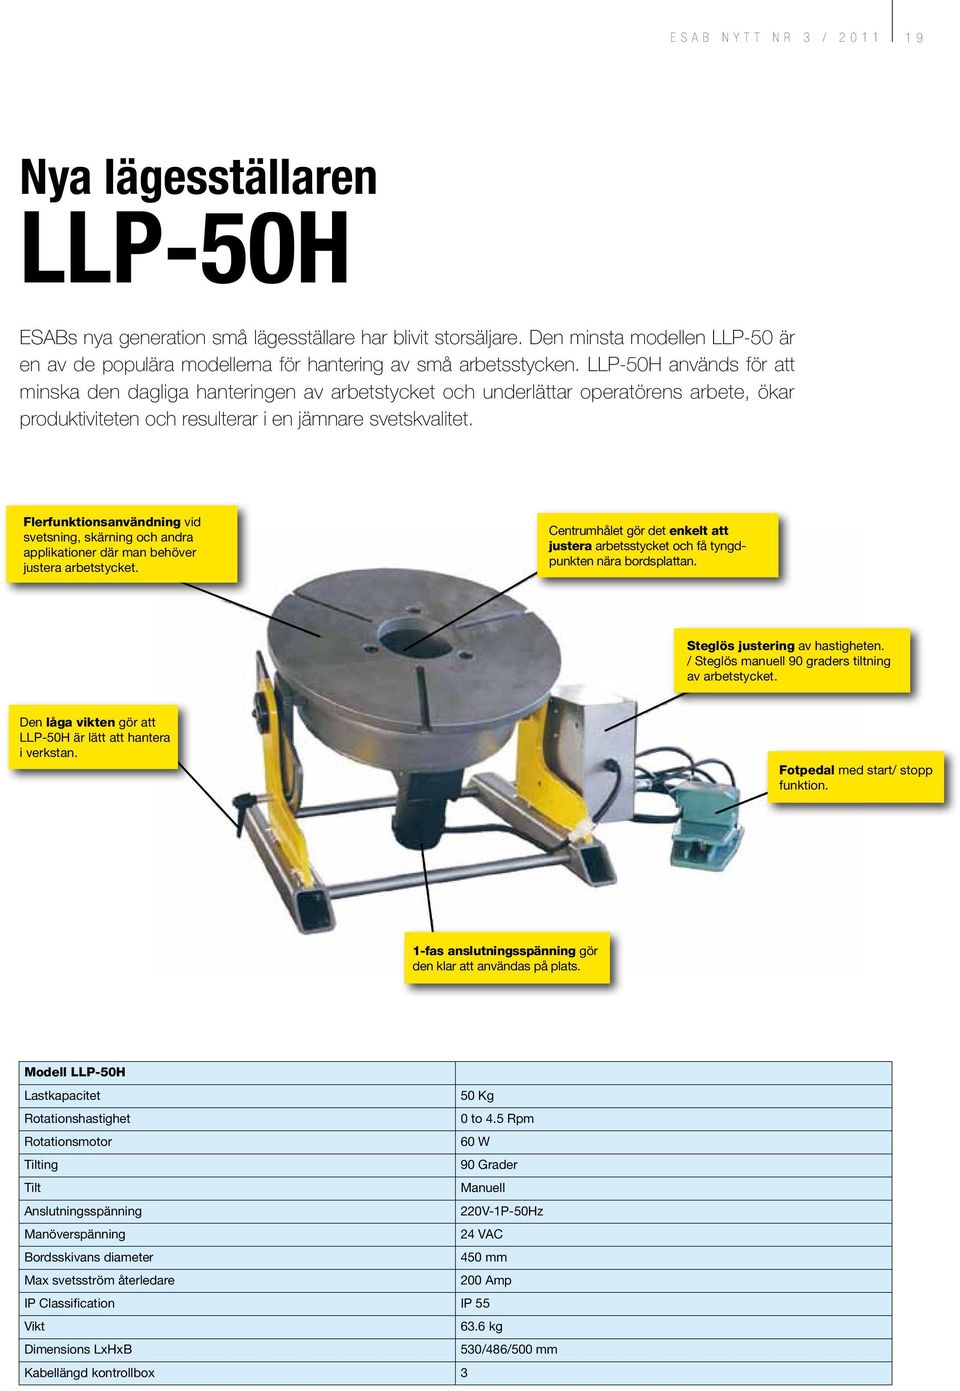 LLP-50H används för att minska den dagliga hanteringen av arbetstycket och underlättar operatörens arbete, ökar produktiviteten och resulterar i en jämnare svetskvalitet.